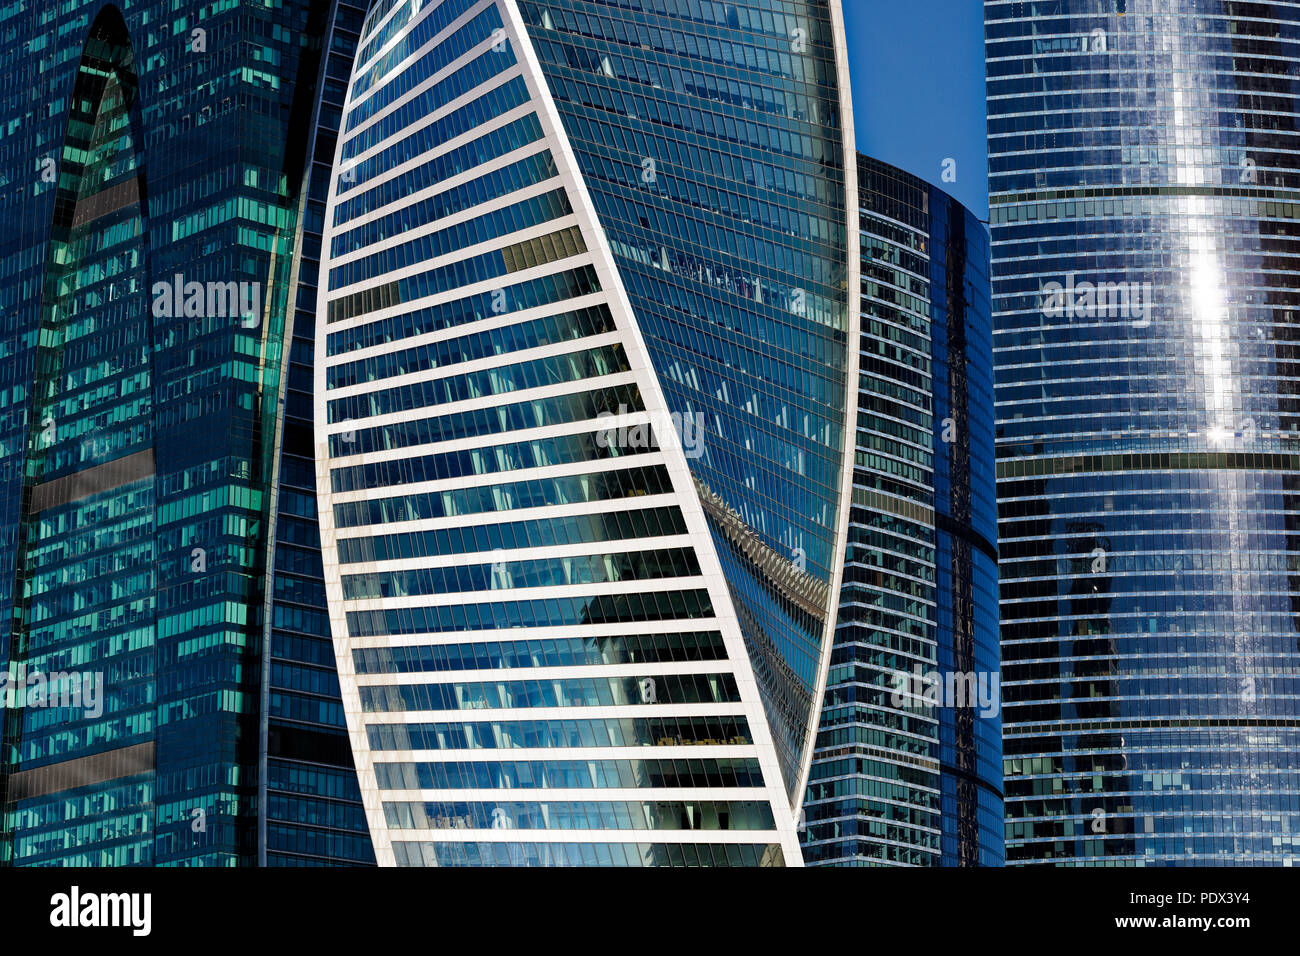 In der Nähe von Hochhäusern in Moskau International Business Center (MIBC), auch als "Moscow City" bekannt ist. Moskau, Russland. Stockfoto